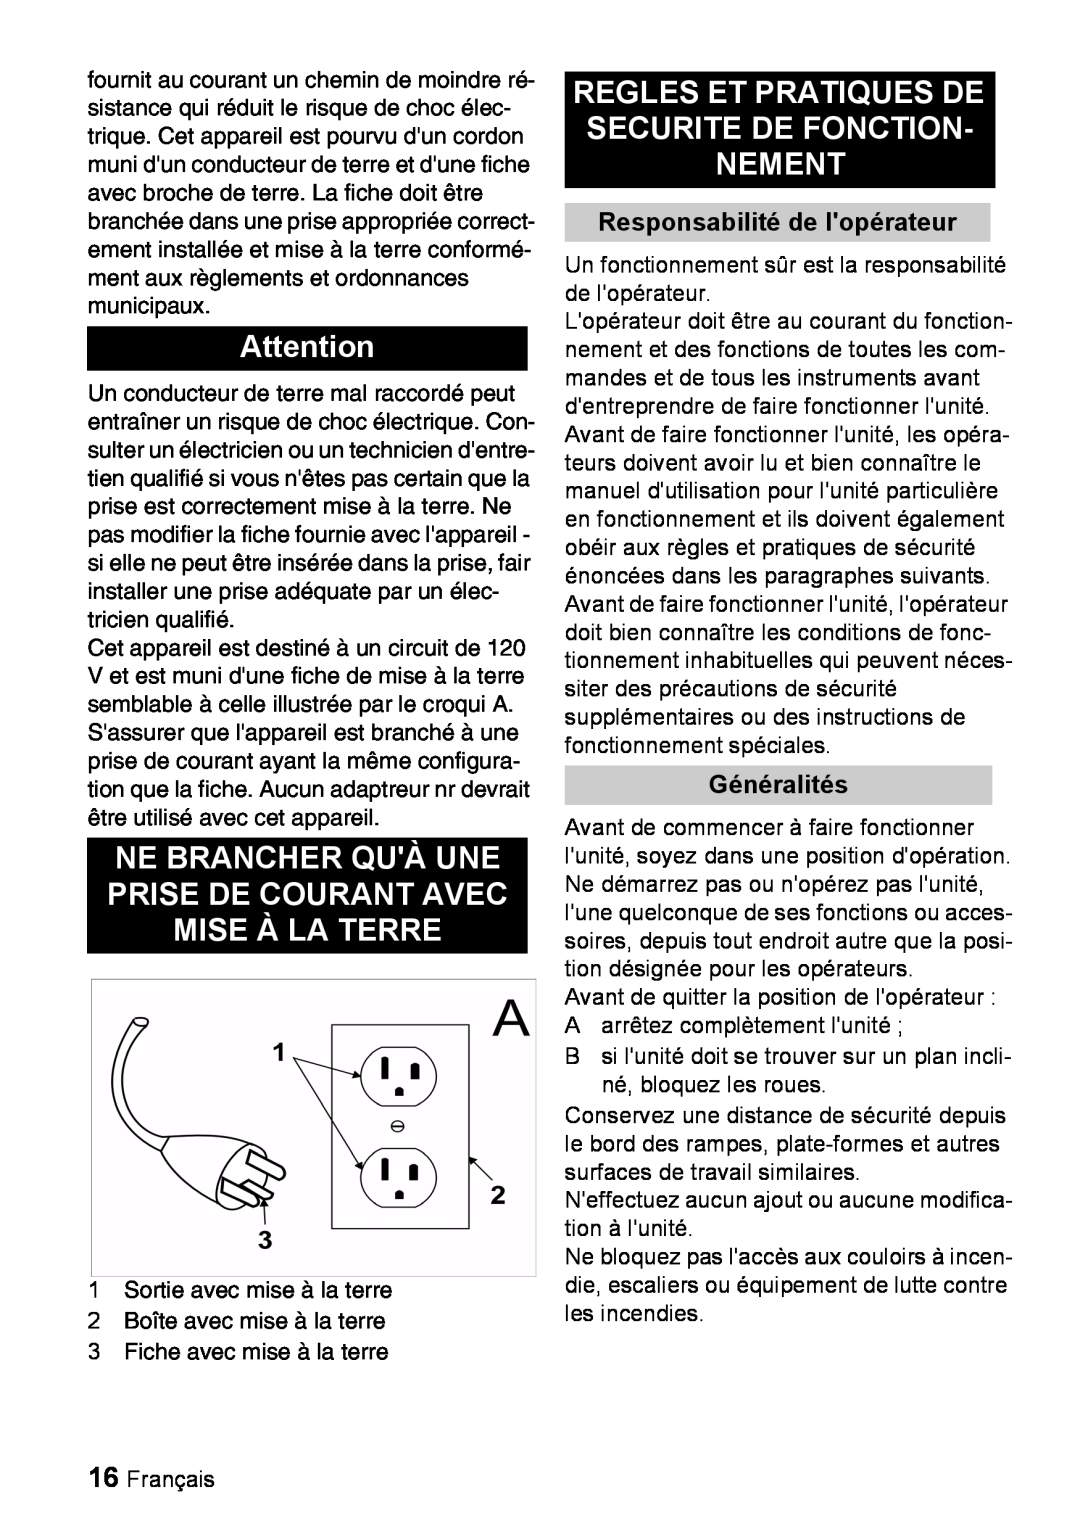 Windsor 16 manual Responsabilité de lopérateur, Généralités 